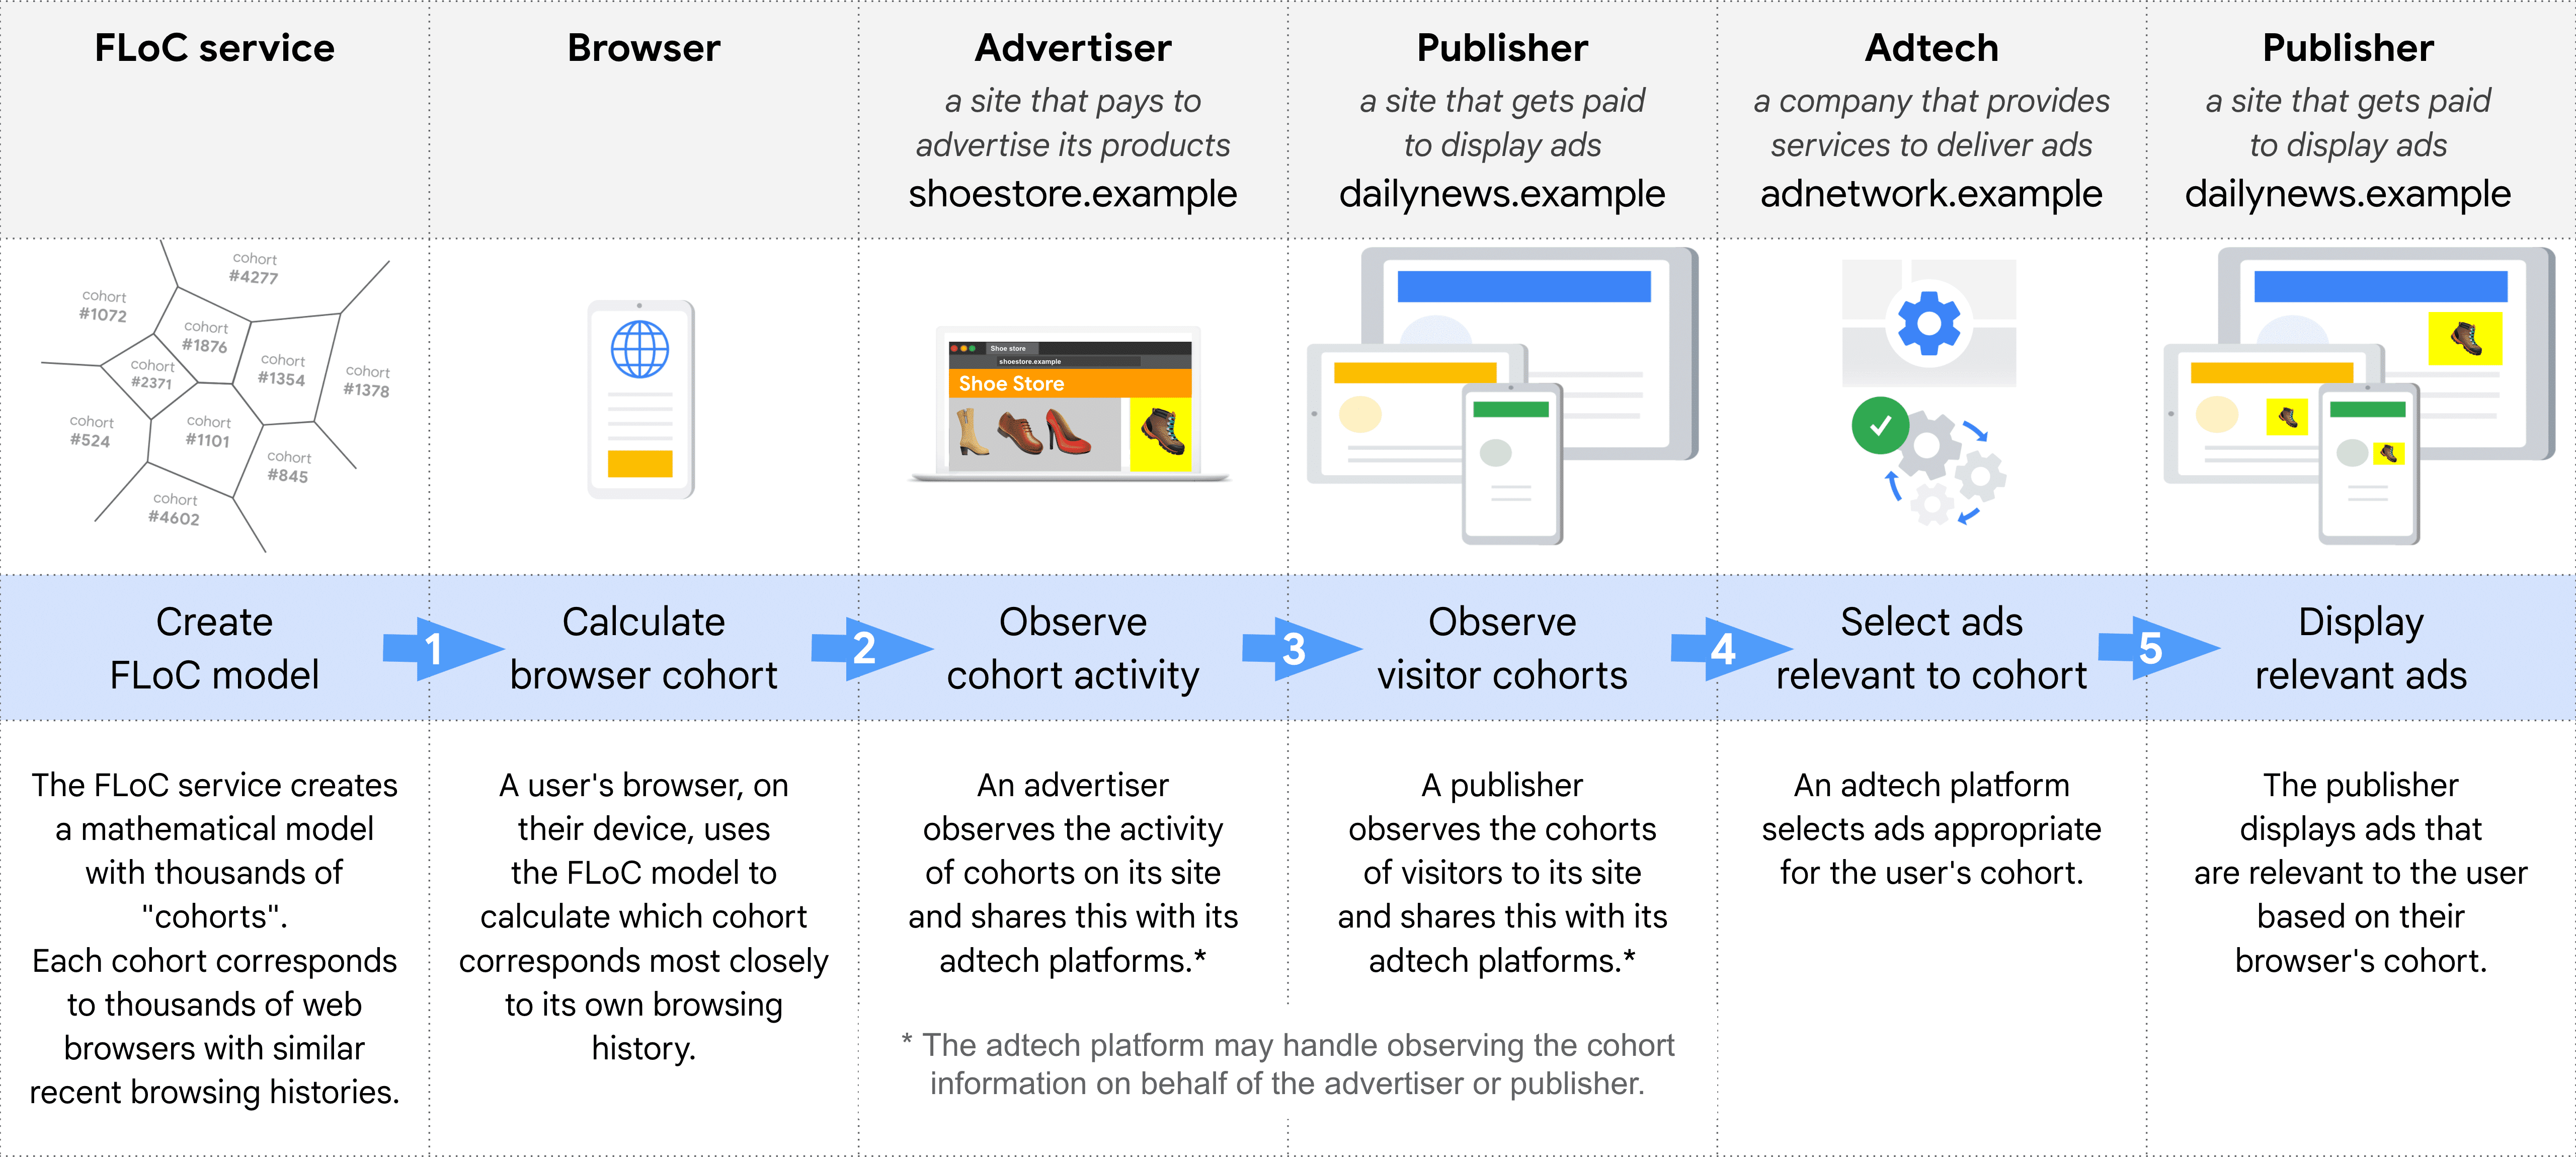 Diagrama mostrando, passo a passo, as diferentes funções na seleção e exibição de um anúncio usando
  FLoC: serviço FLoC, navegador, anunciantes, editor (para observar coortes), adtech,
  editor (para anúncios de display)